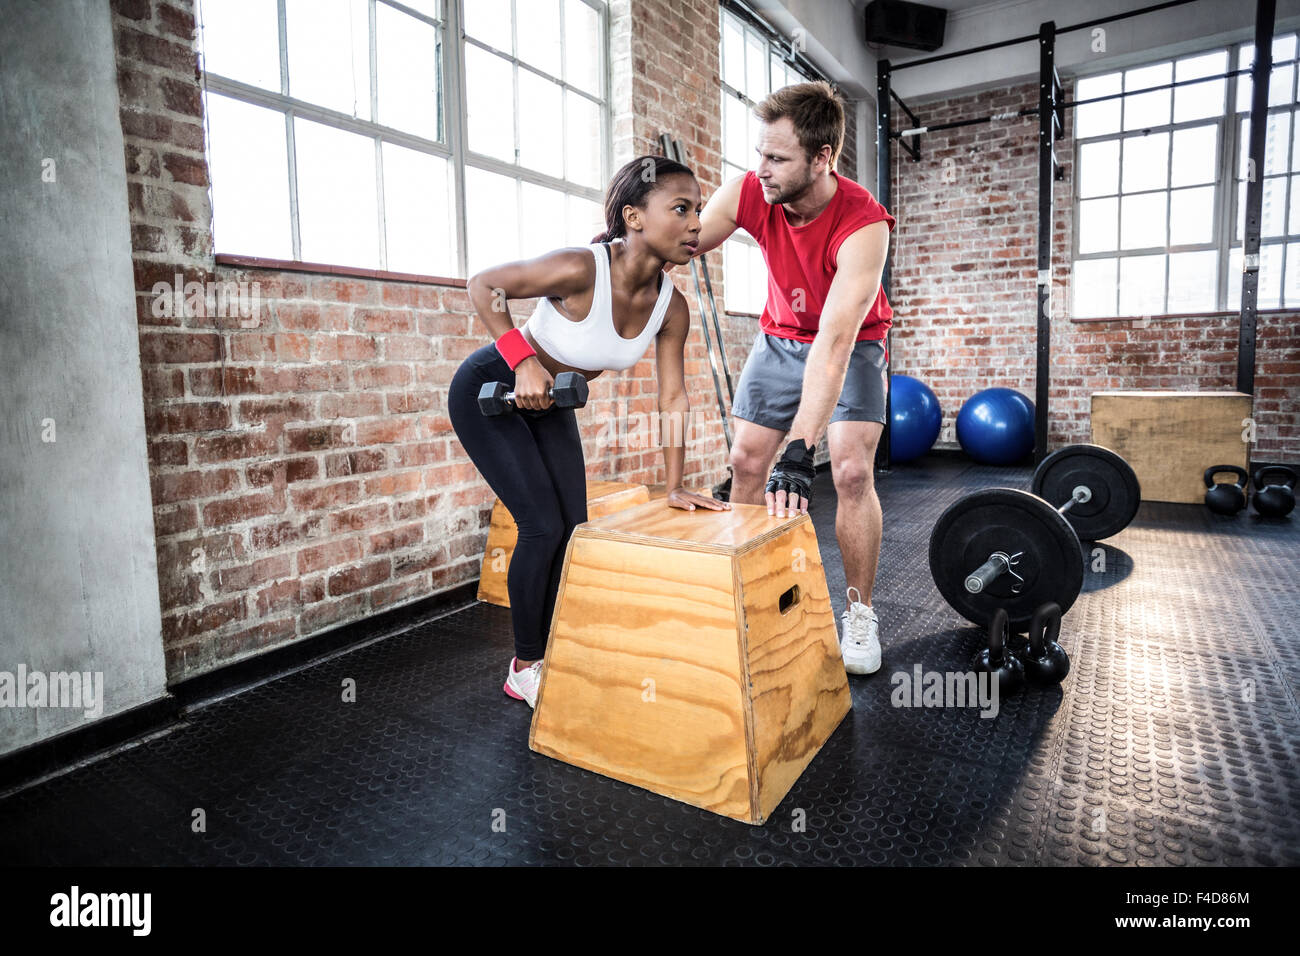 Donna muscolare il sollevamento di pesi con il suo trainer Foto Stock